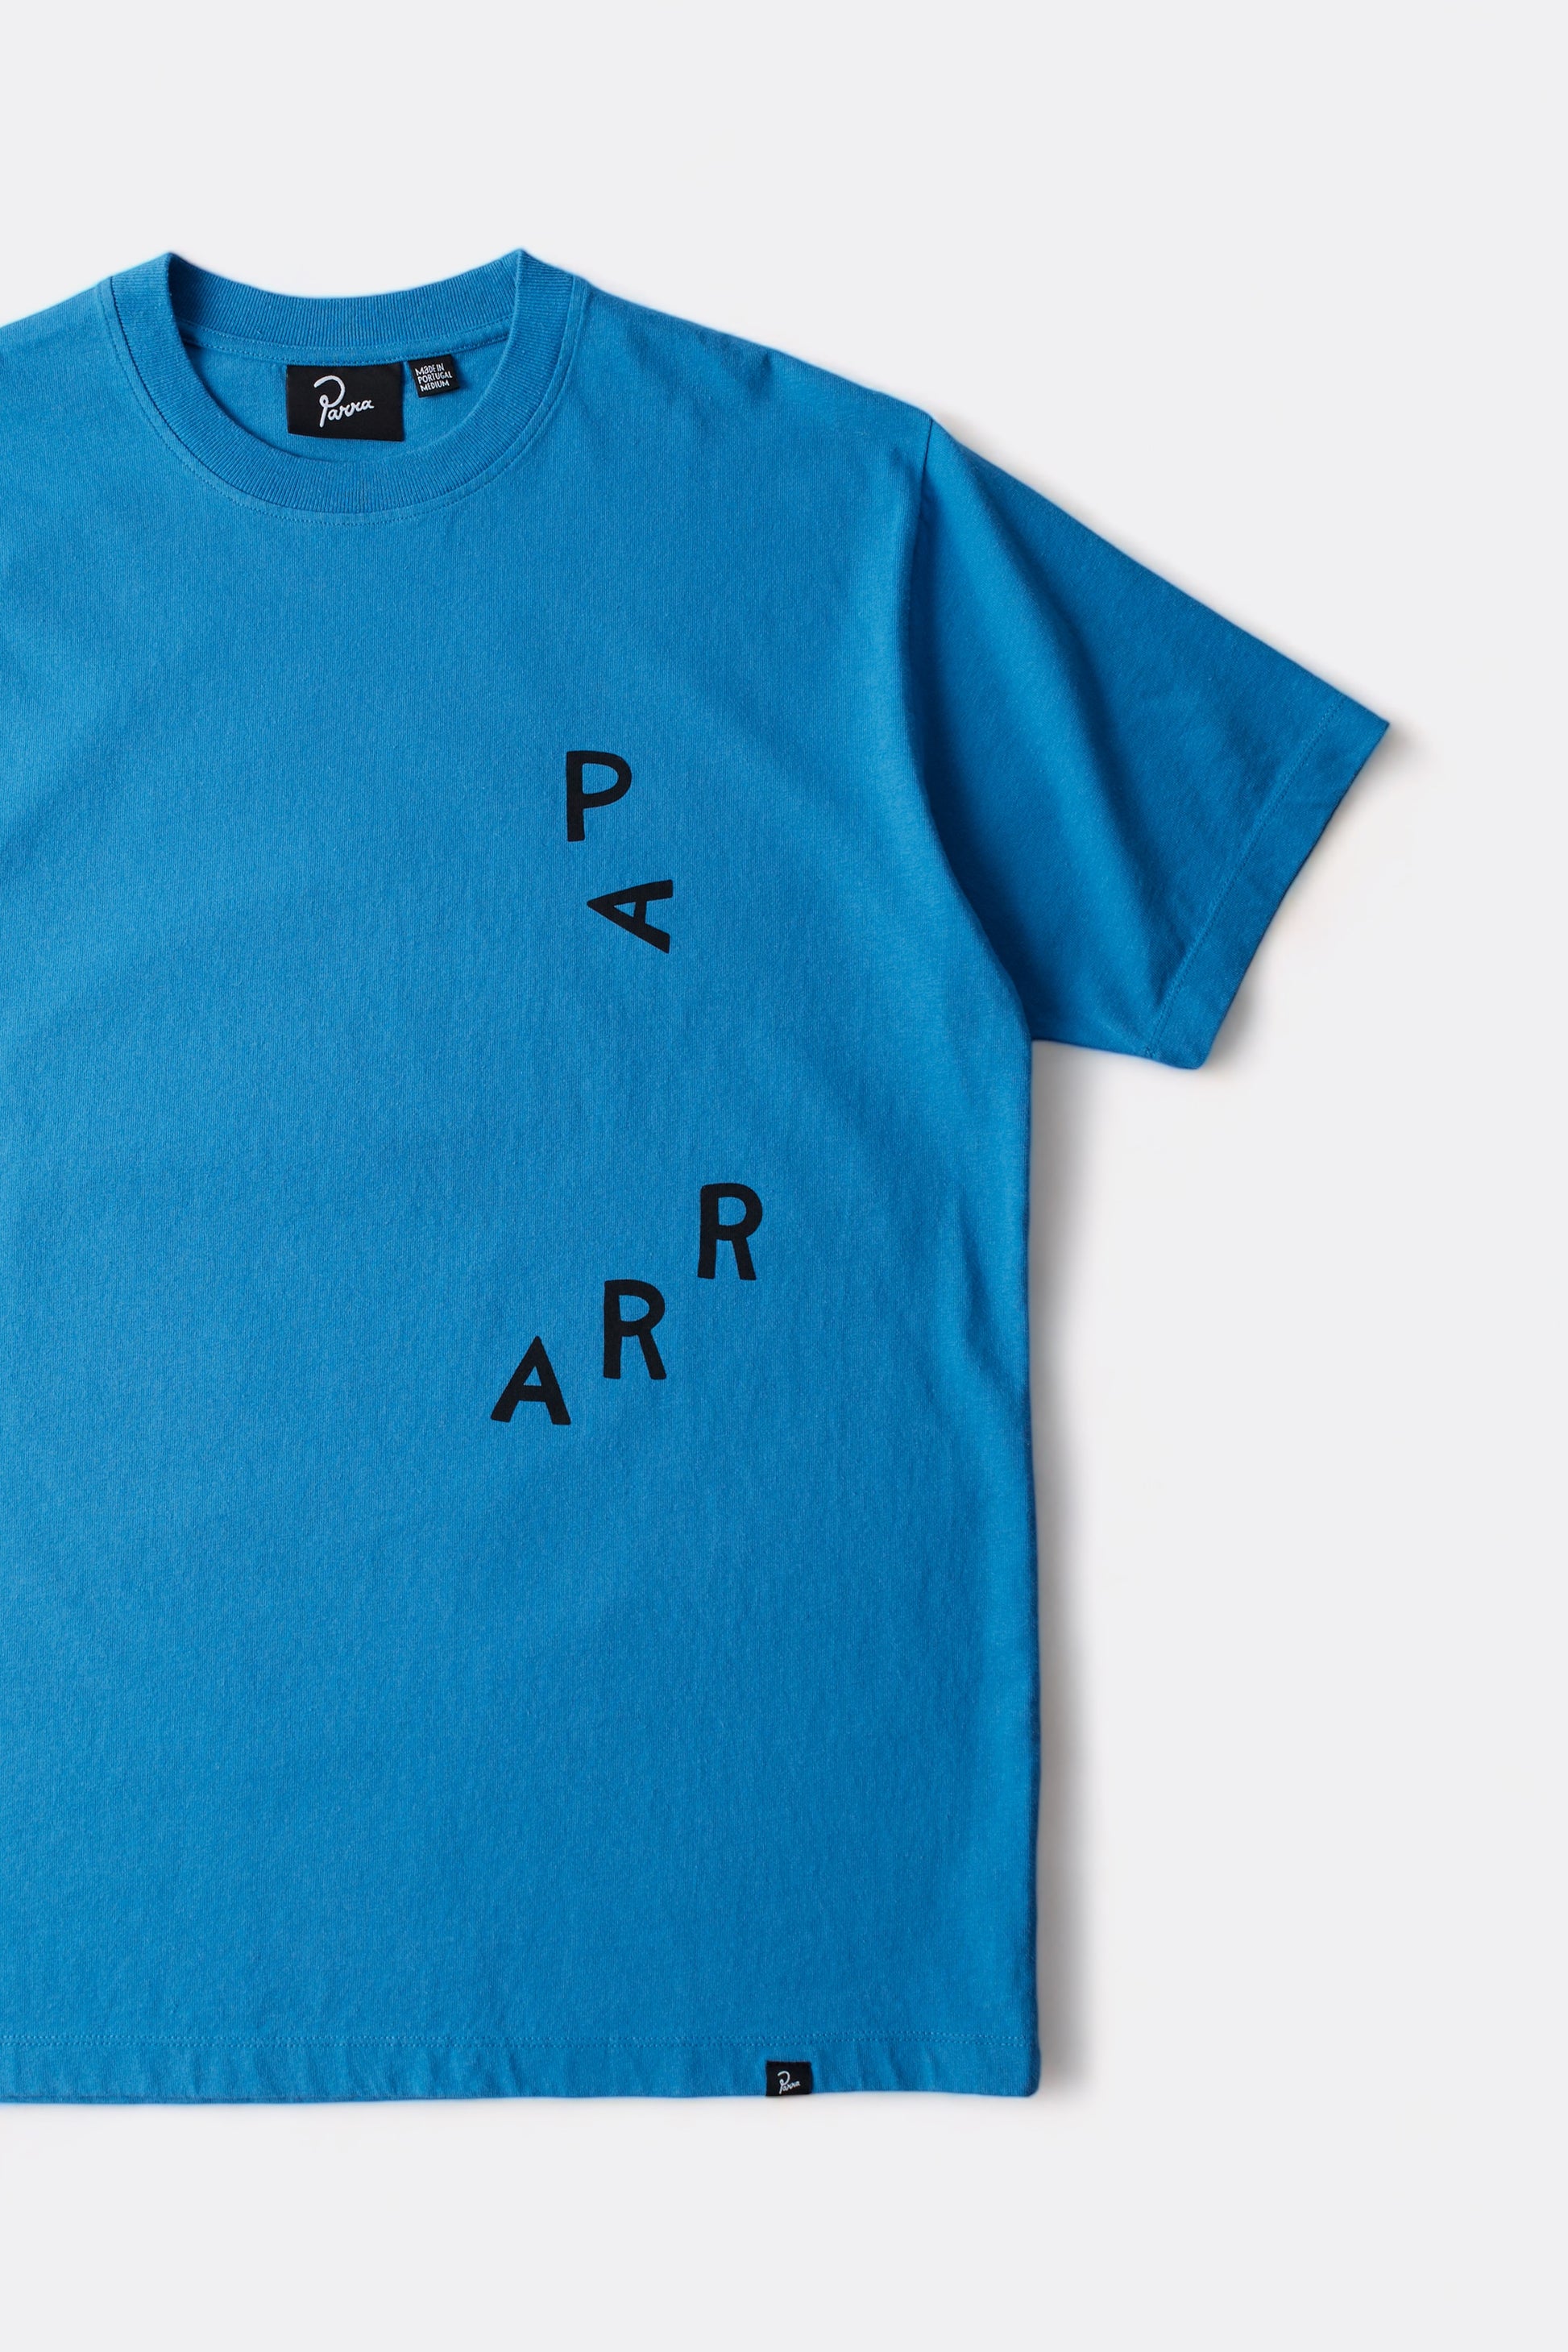 Parra - Fancy Horse T-Shirt (Azure Blue)